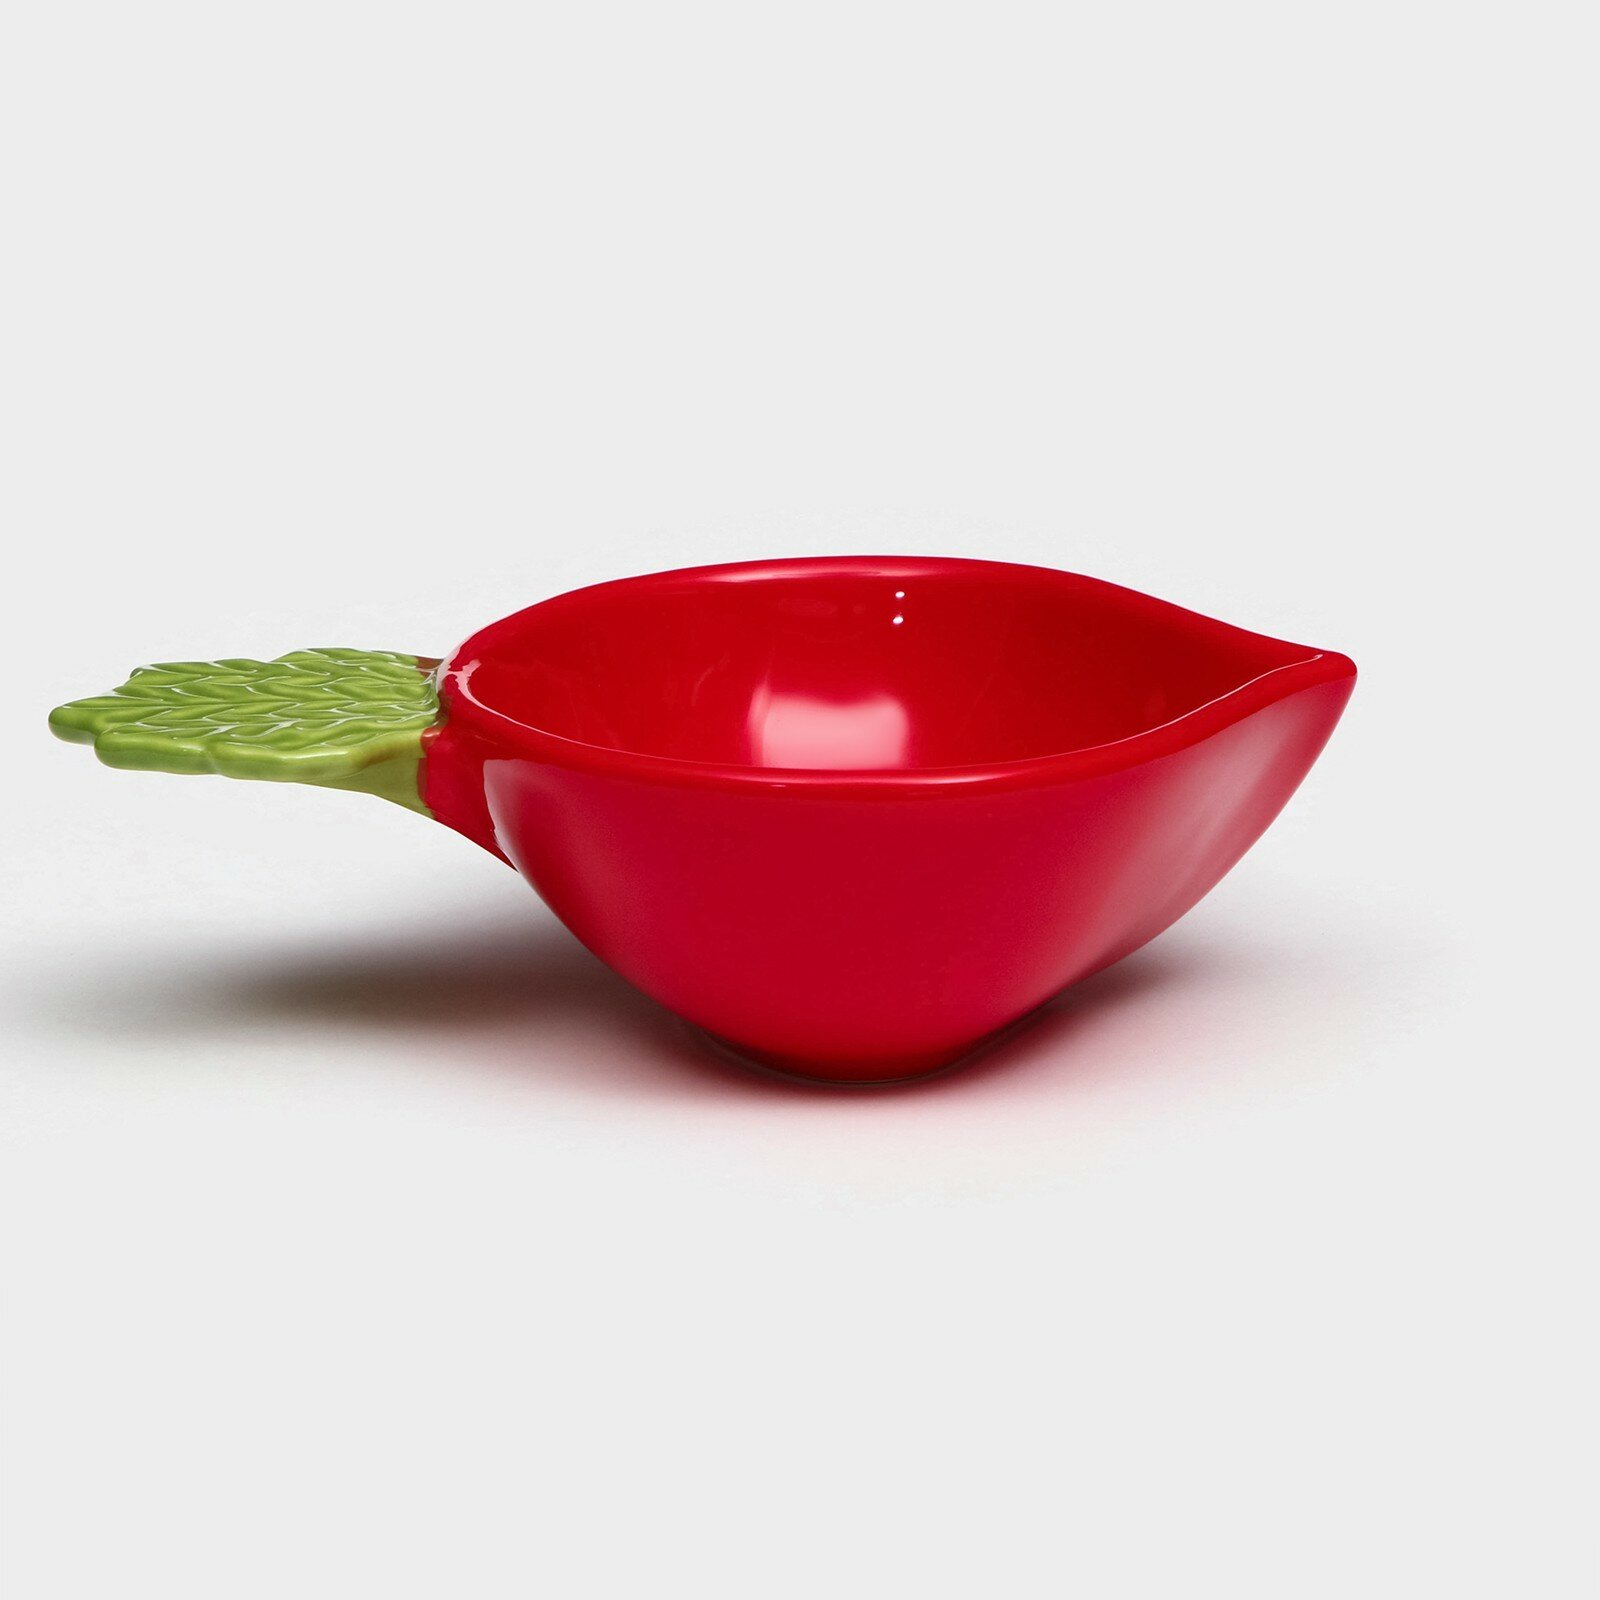 Тарелка керамическая "Редис", глубокая, красная, 17 см